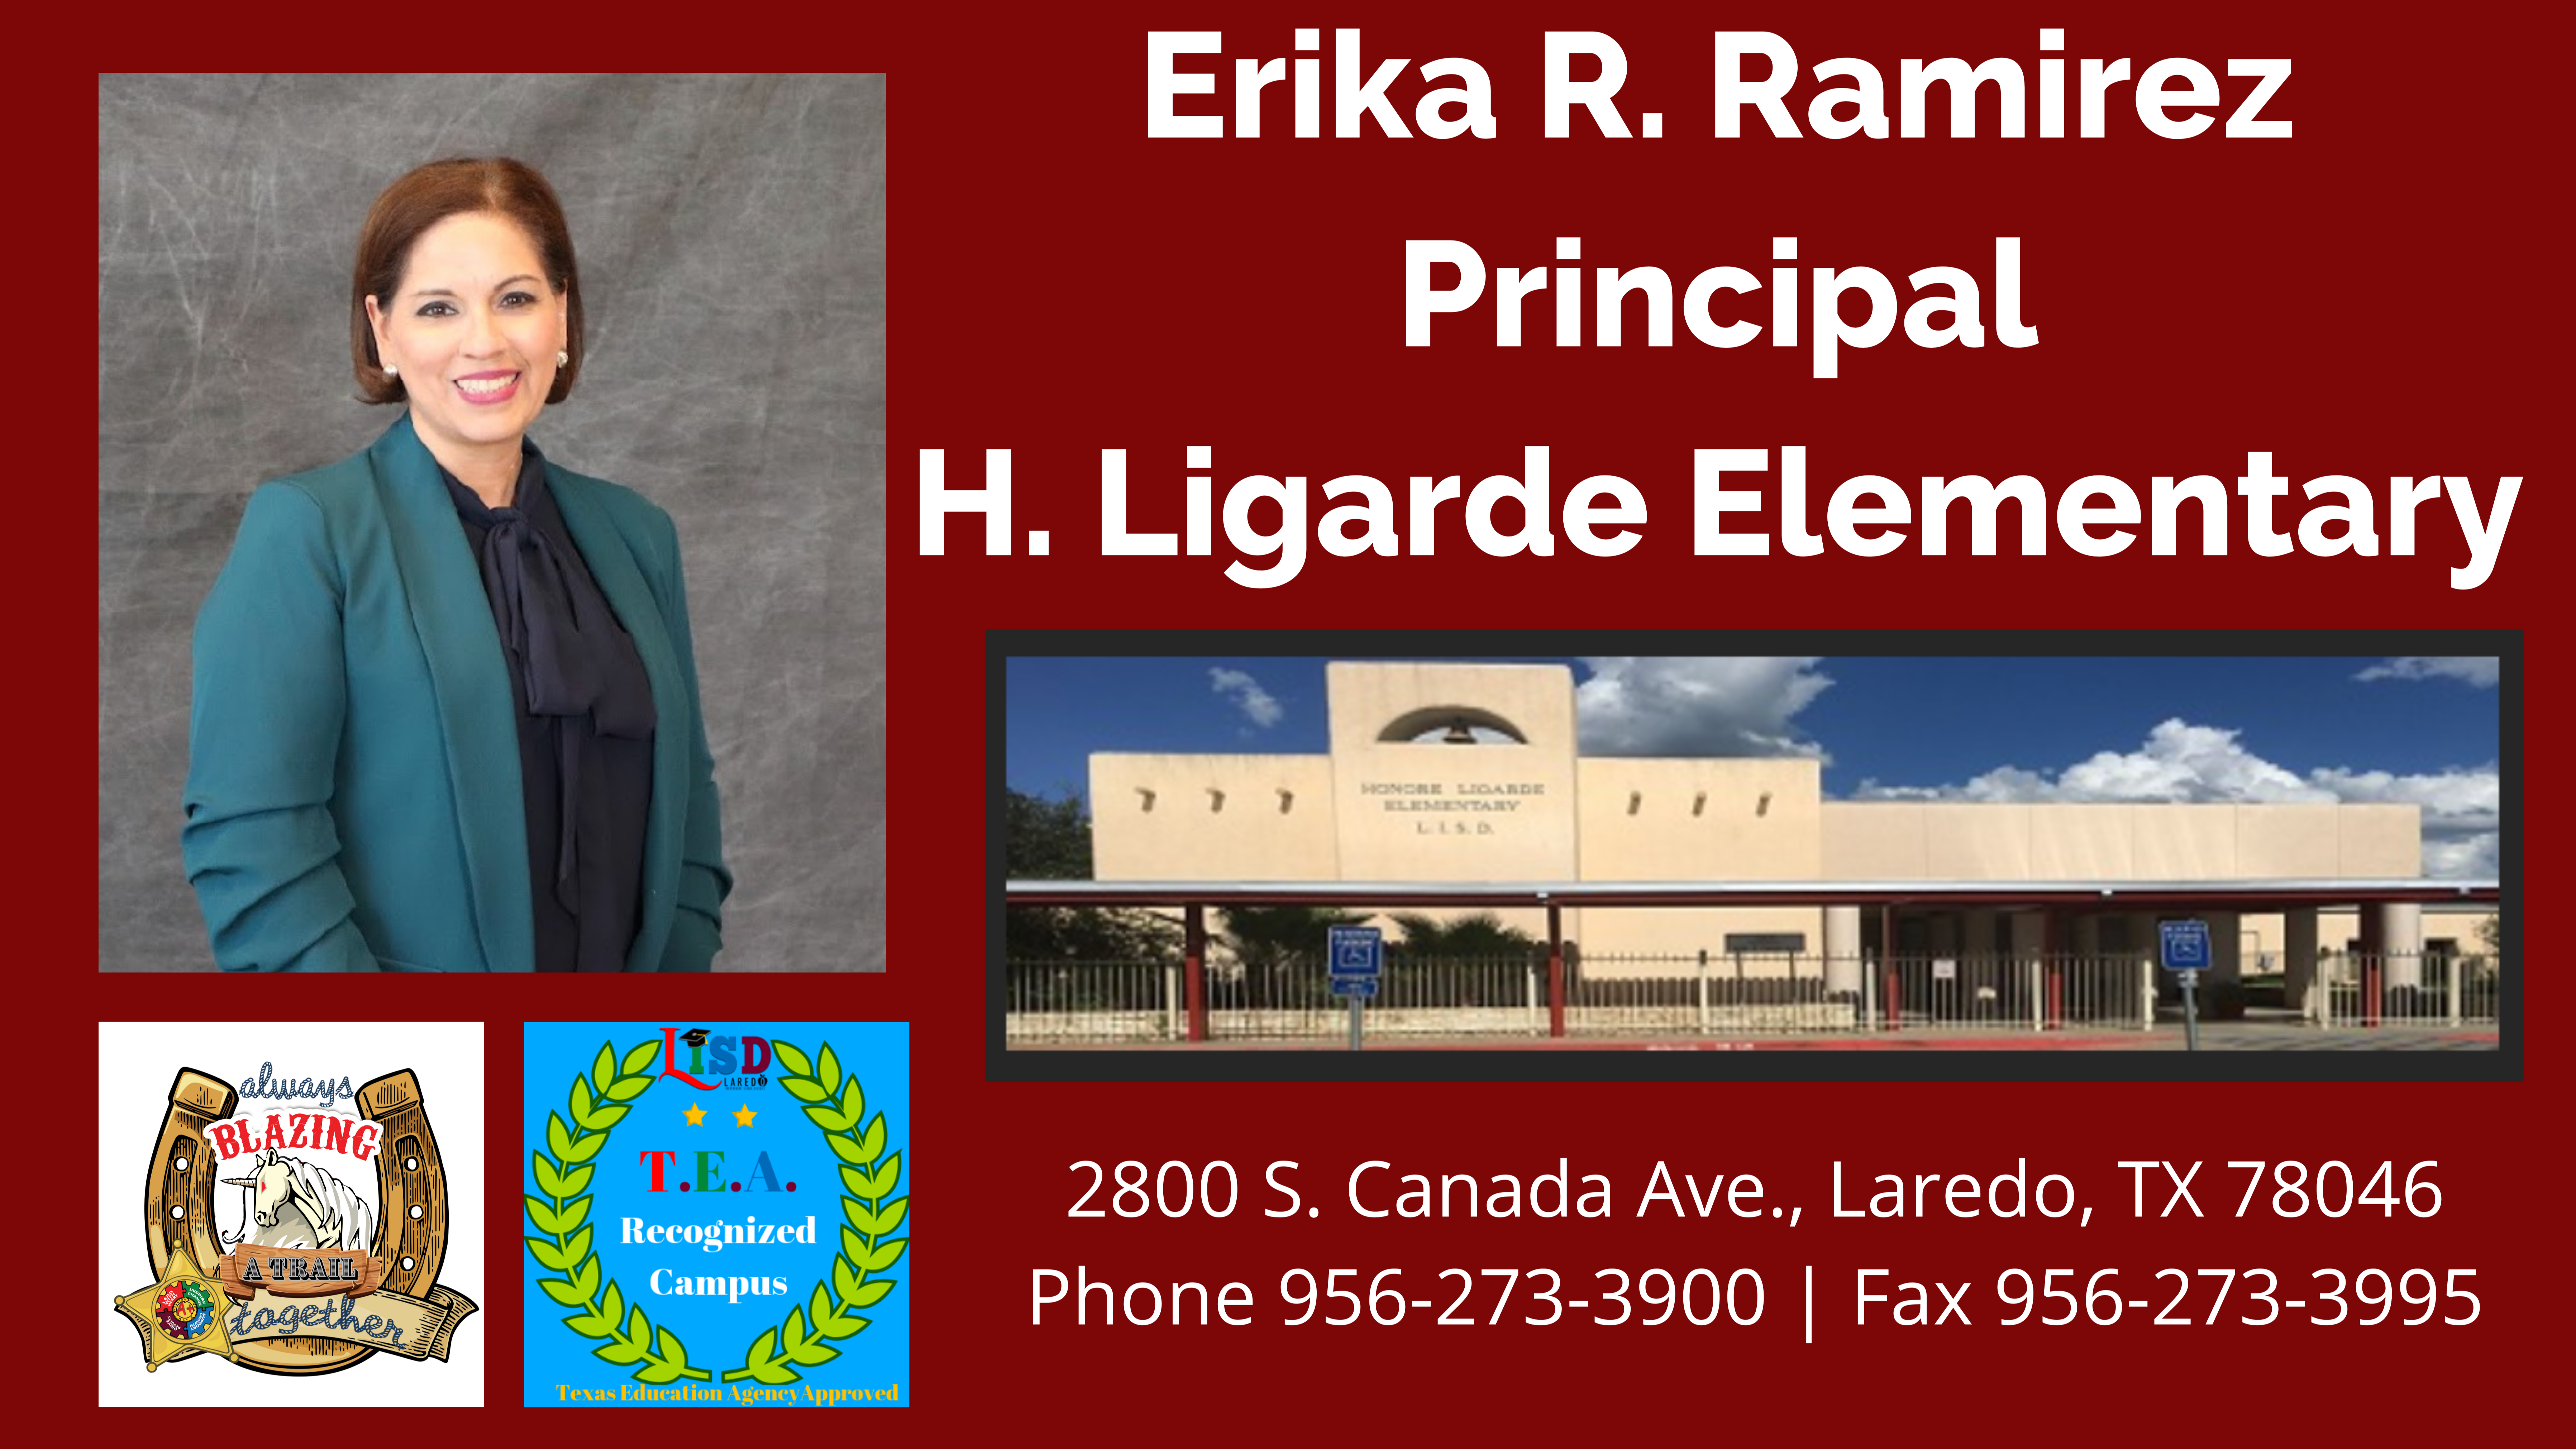 Erika R. Ramirez: Principal of H. Ligarde Elementary